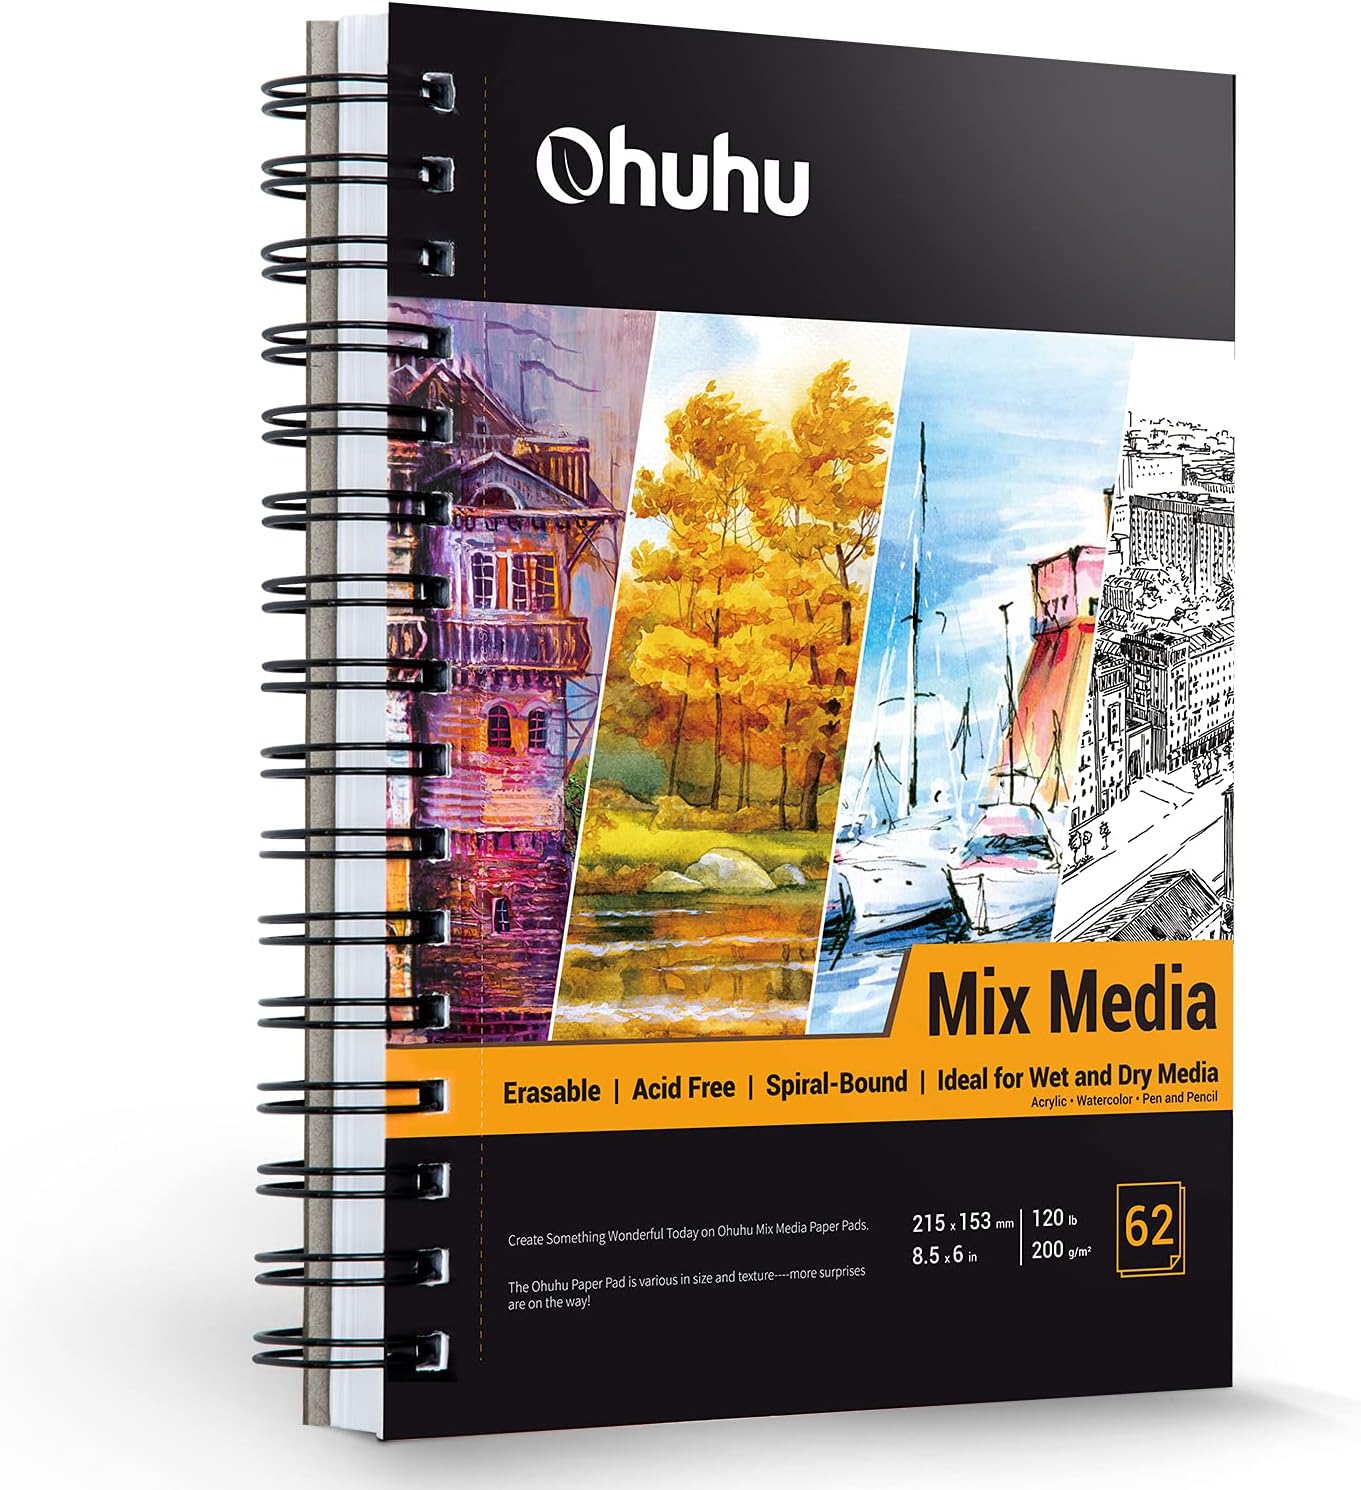 Mix Media Pad, Ohuhu 8.5x6 Mixed Media Art Sketchbook, 120 LB